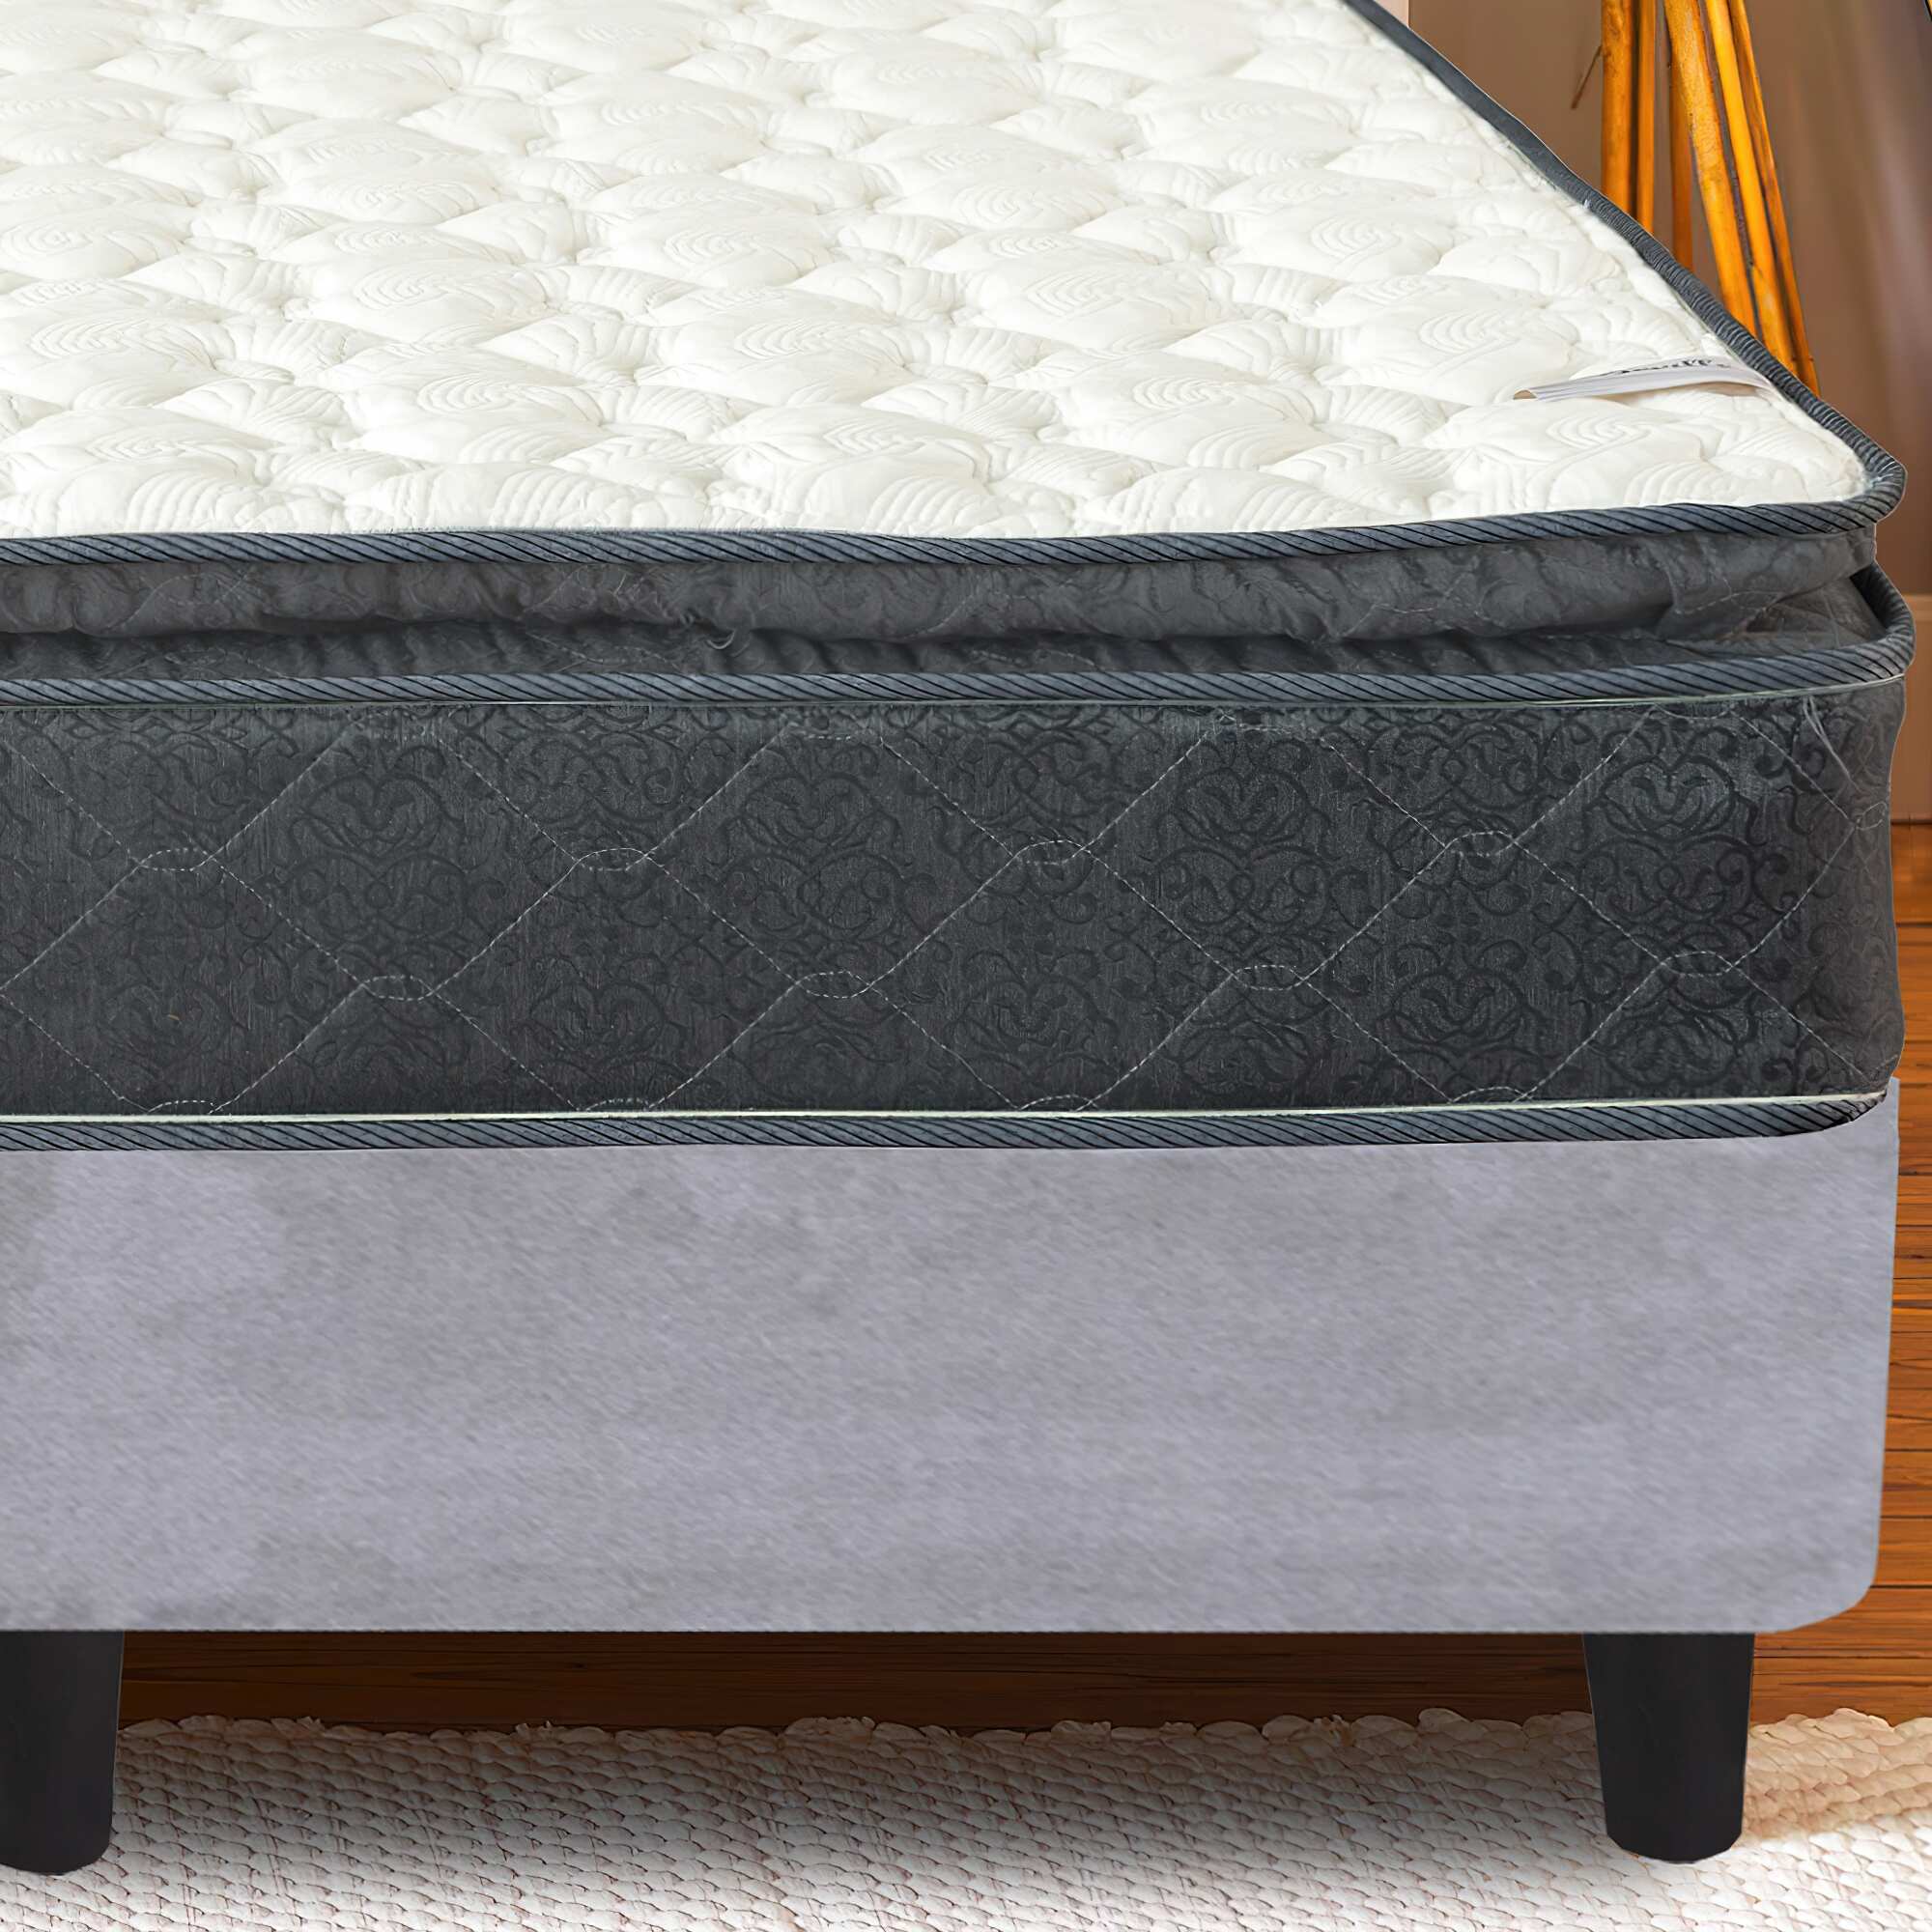 Onetan Mattress and Platfrom Bed Set, 10-Inch Memory Foam Medium Pillow Top Hybrid Mattress and 13" Wood Premium Platform Bed